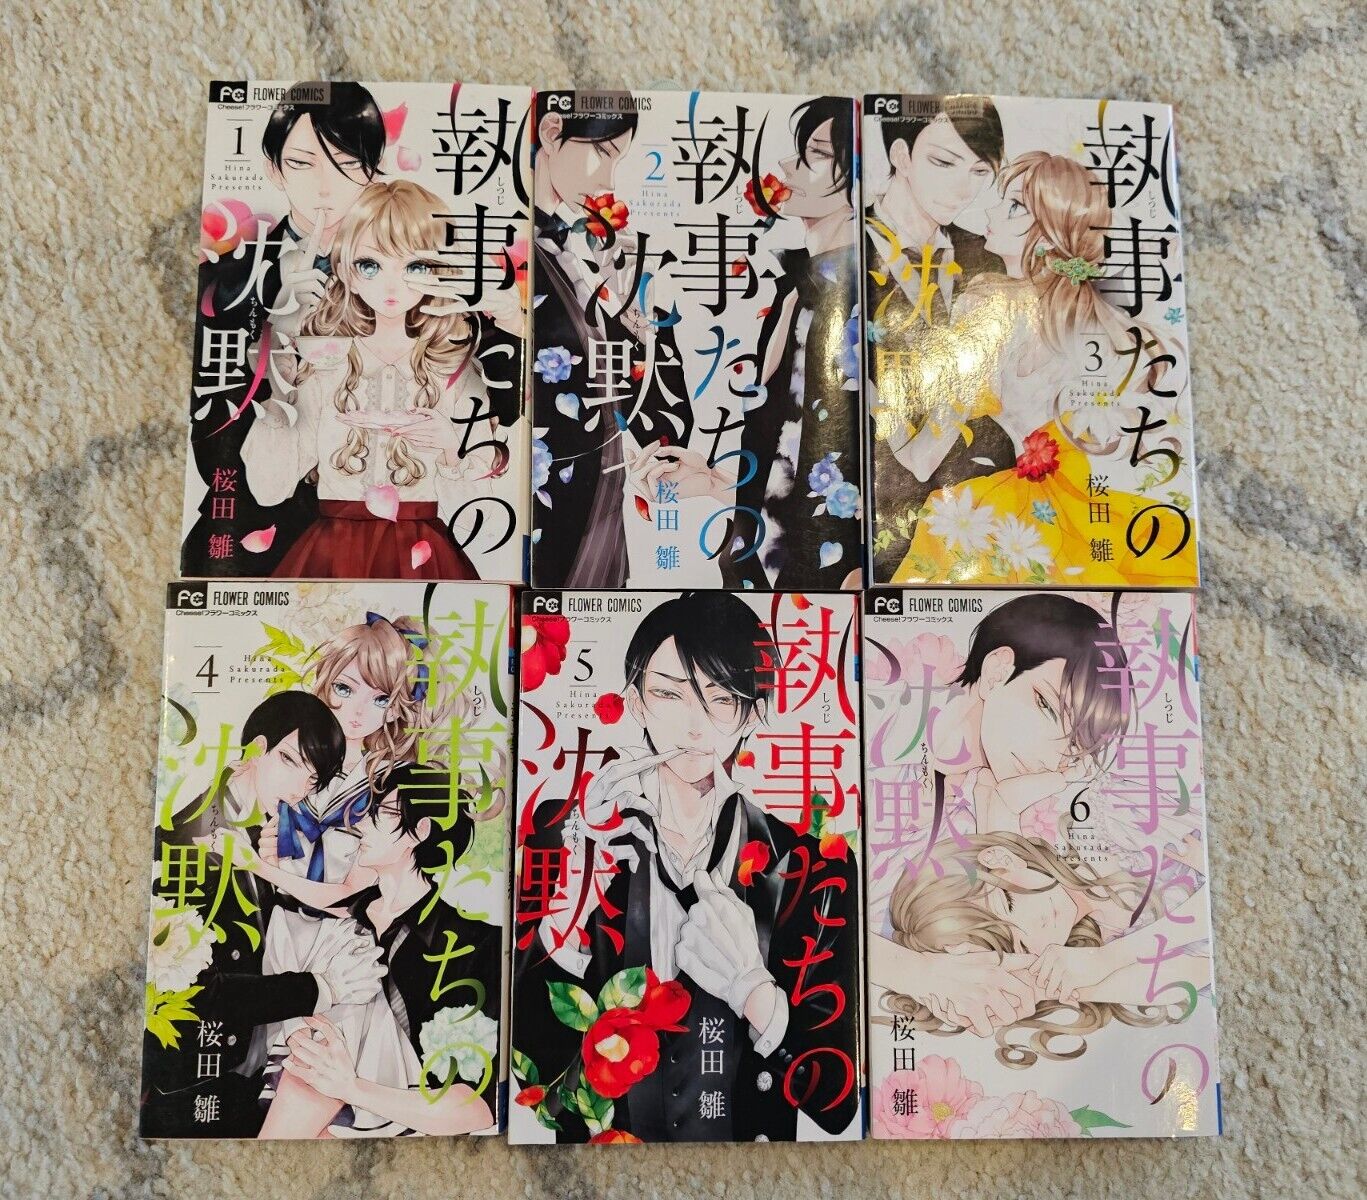 Shitsuji tachi no Chinmoku Vol 1-6 JAPANESE Manga 18+ Sakurada Romance Book Lot